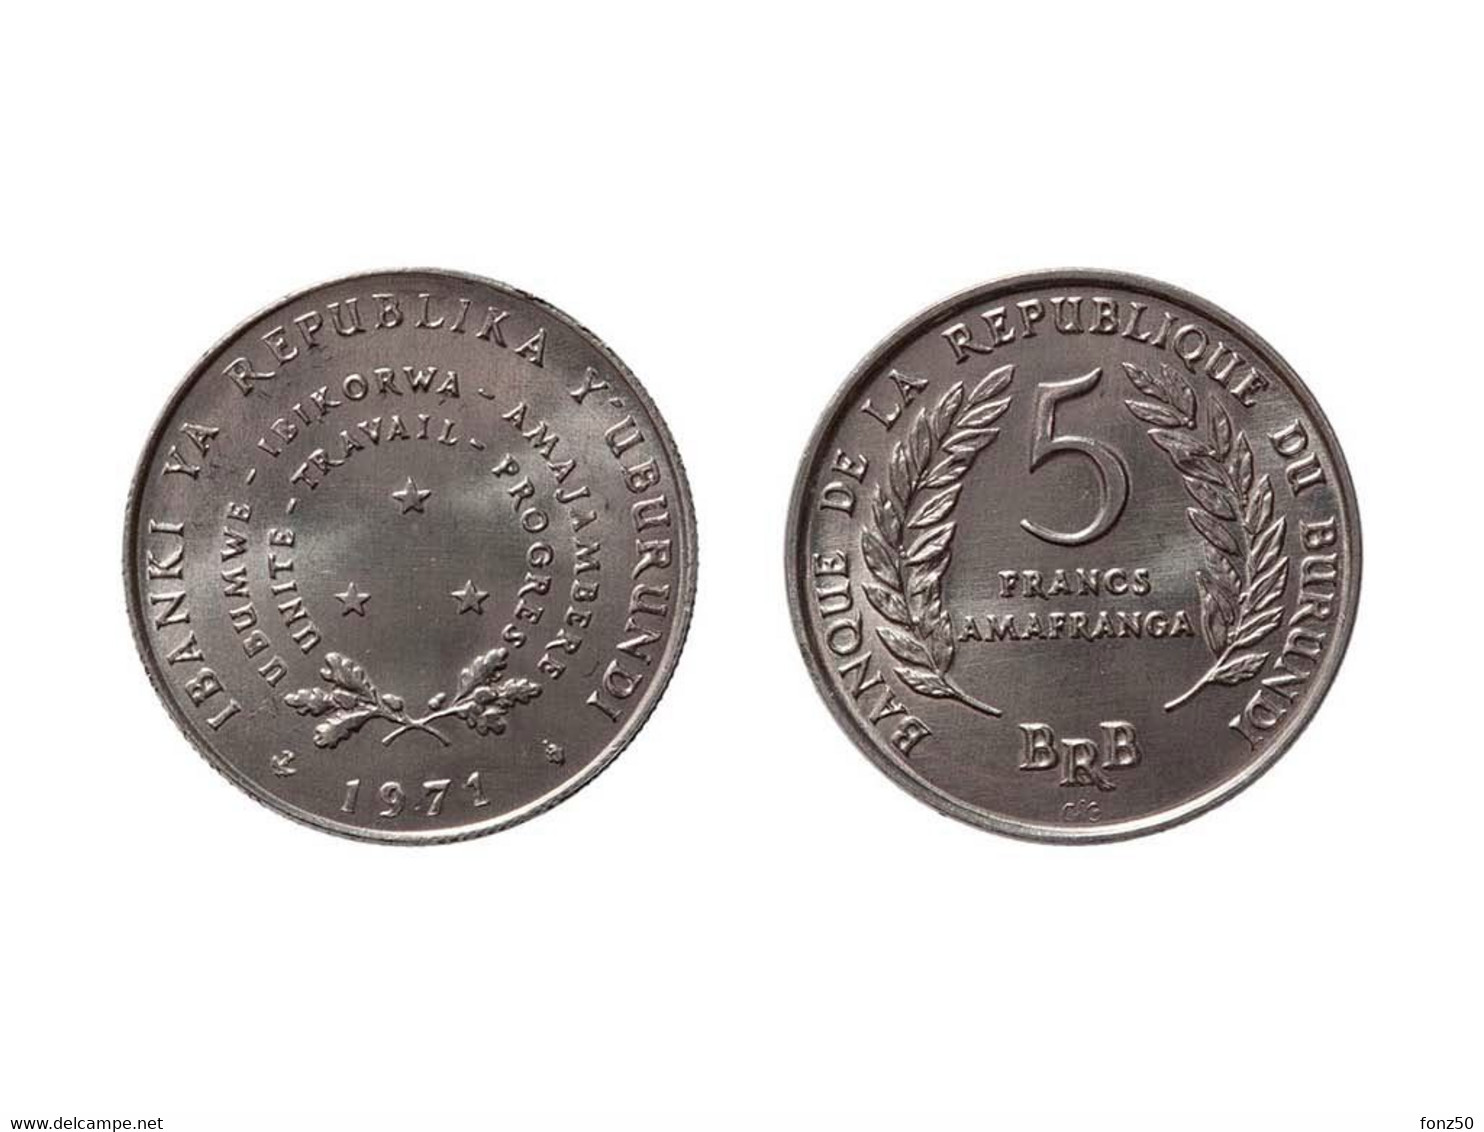 BURUNDI * 5 Francs 1971 * F D C * Nr 10609 - Burundi